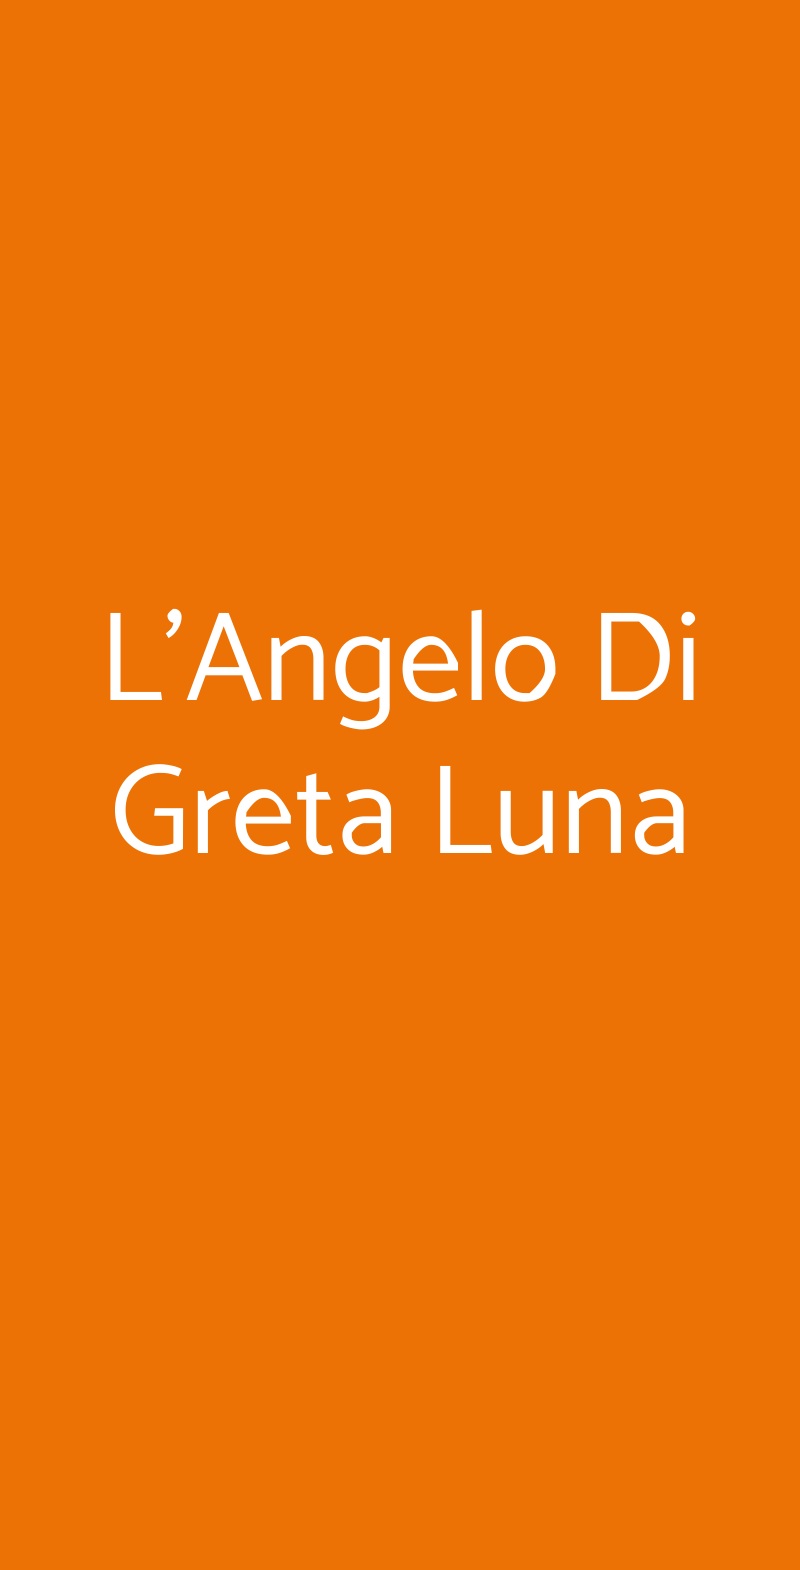 L'Angelo Di Greta Luna San Damiano d'Asti menù 1 pagina